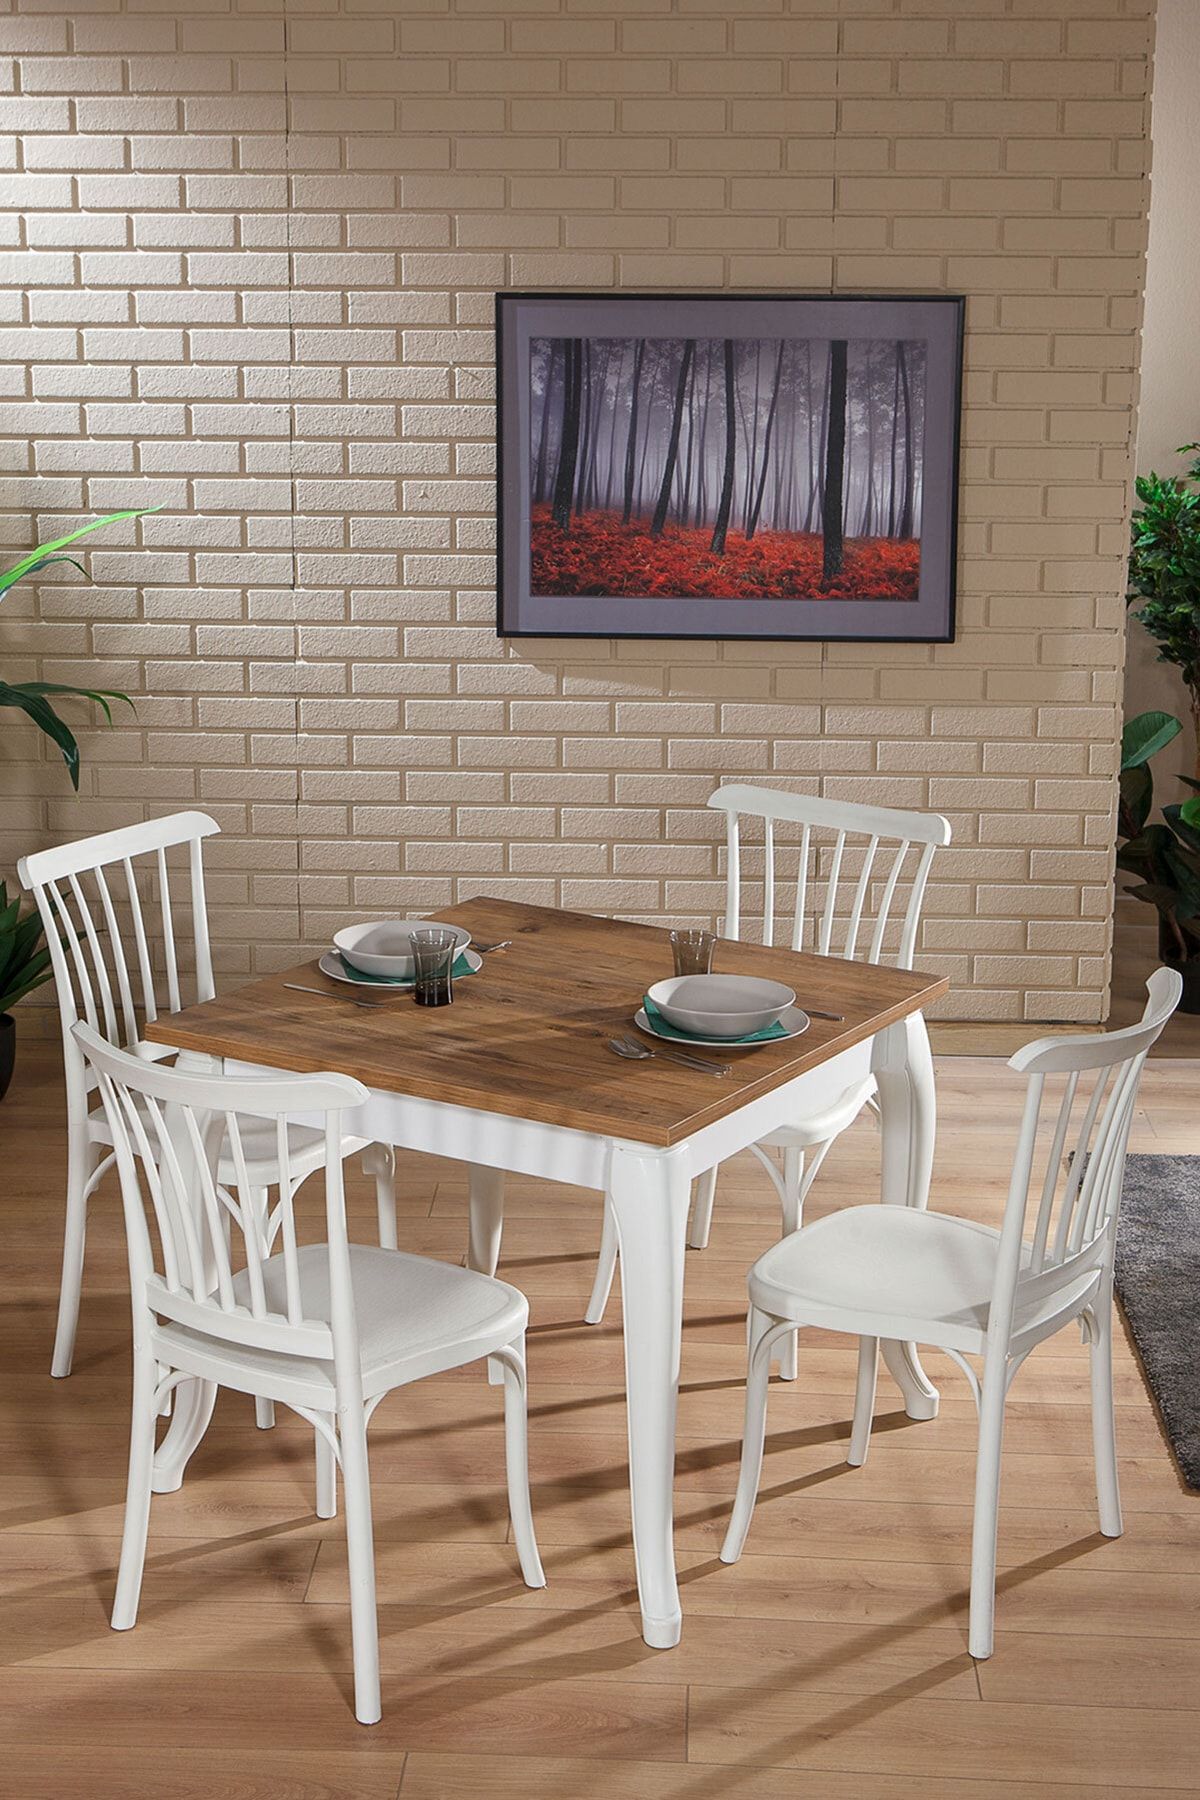 SANDALİE Violet Beyaz / Sirius Sabit Masa - 4 Sandalye 1 Masa / Salon - Mutfak Masa Takımı